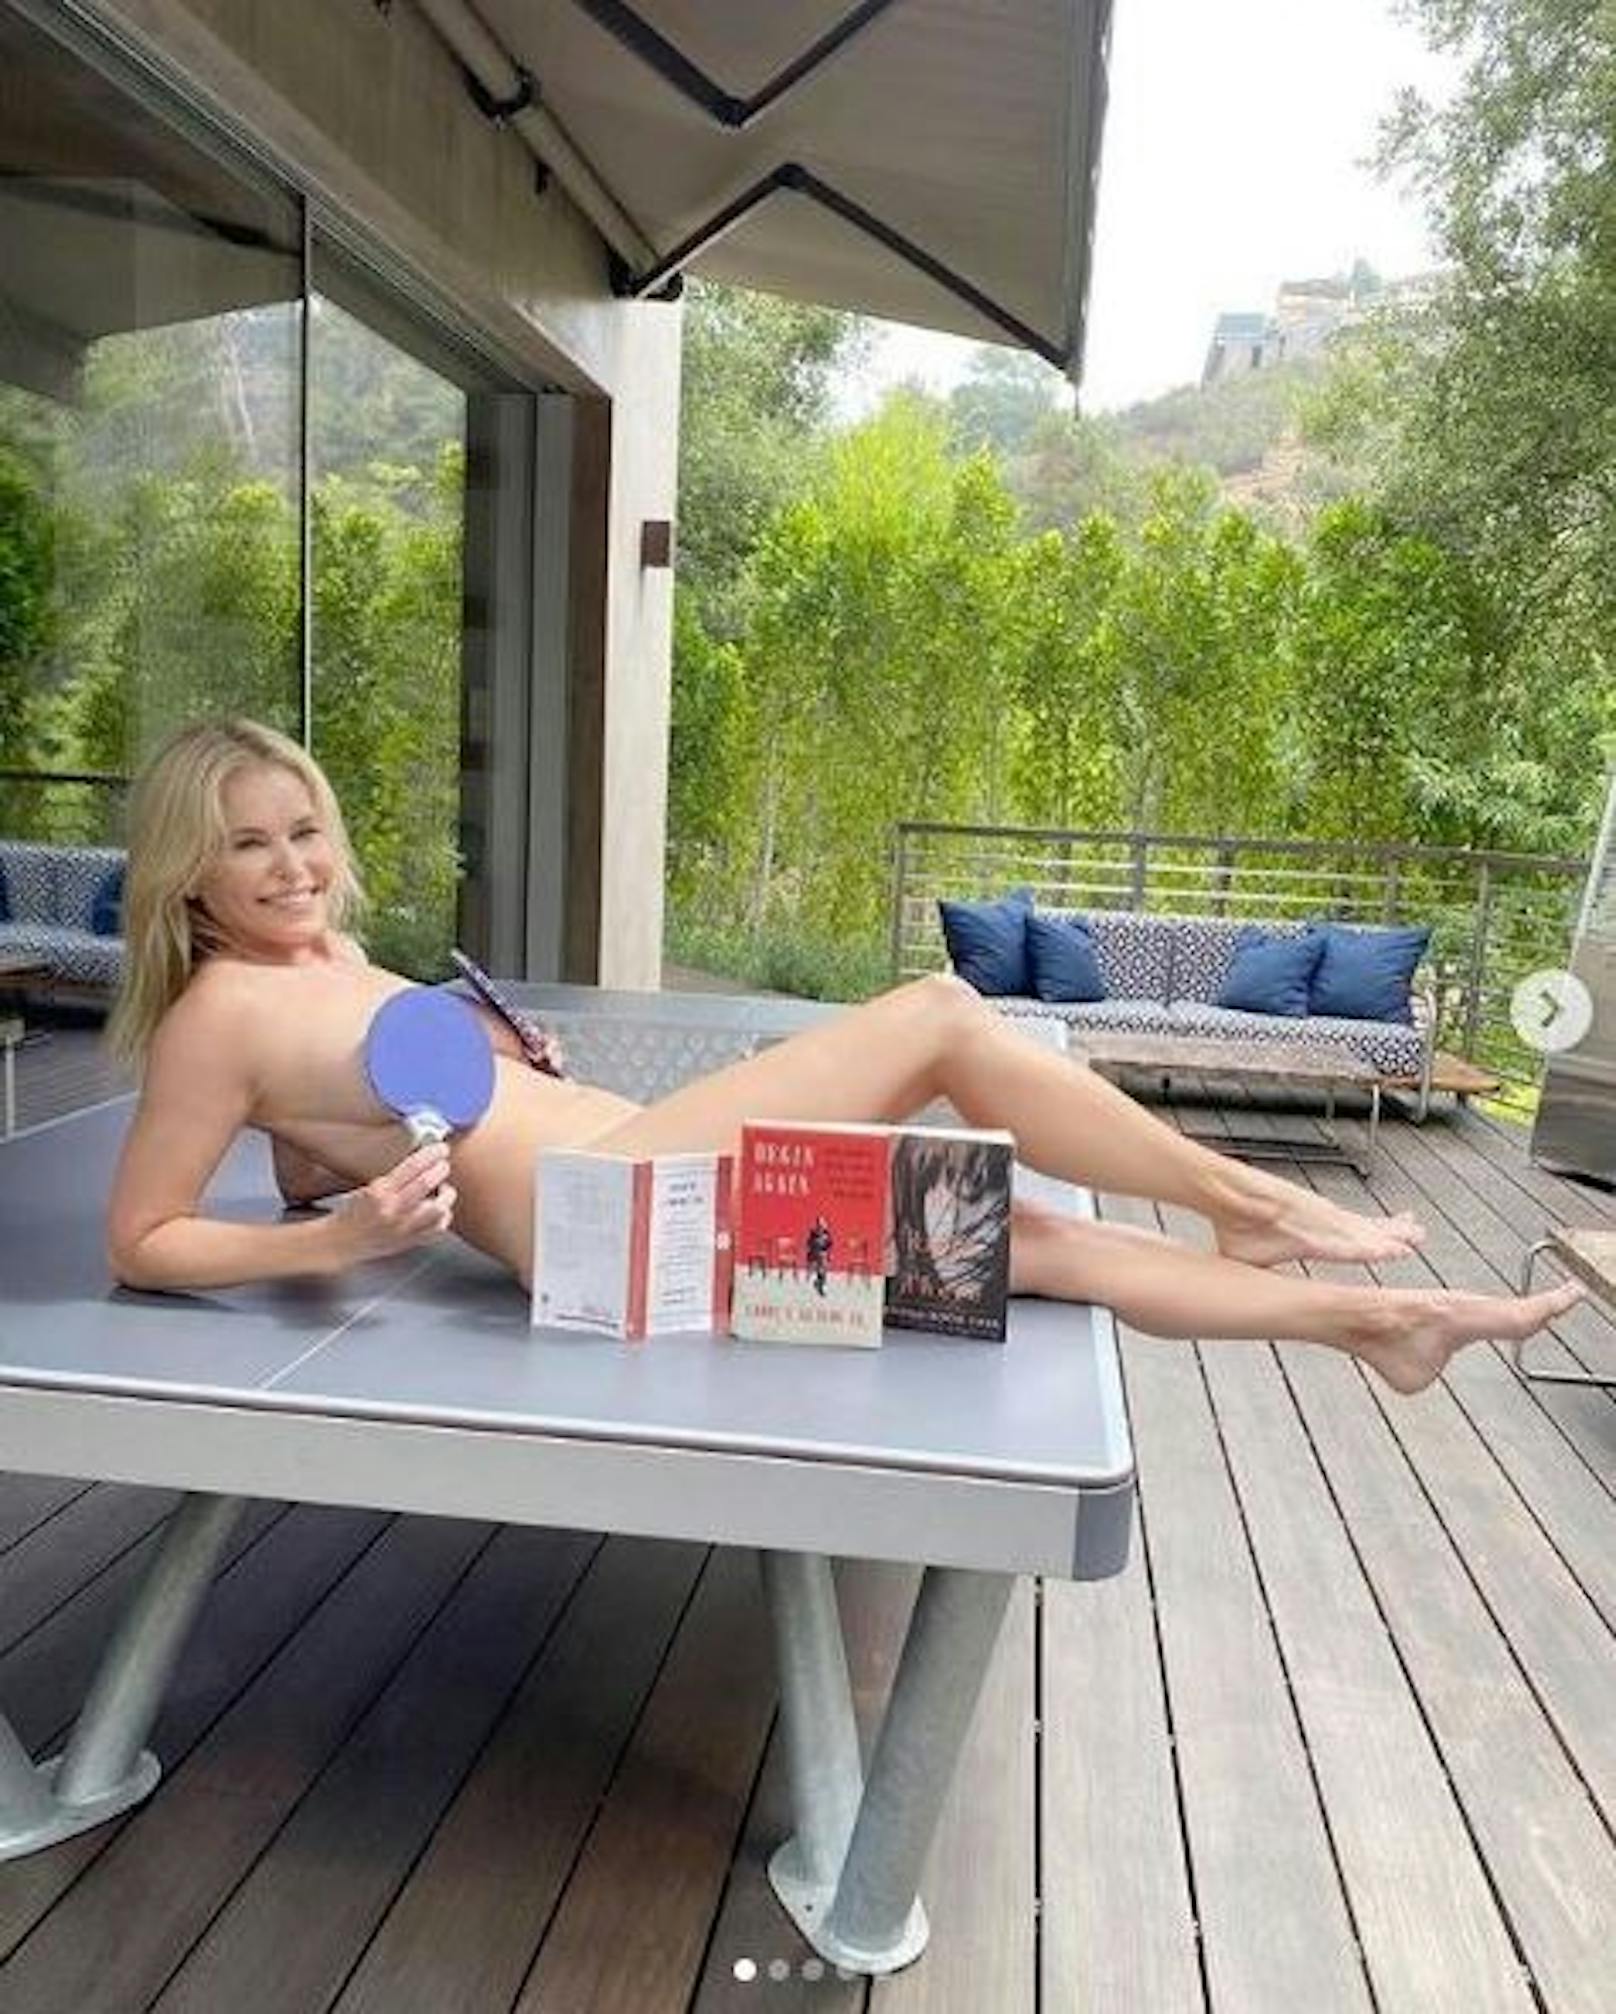 05.08.2020: Komikerin <strong>Chelsea Handler </strong>fragt hier ihre Fans: "Machen dir Literatur und Ping-Pong Spaß? Du willst dich während des heißen Sommers weiterbilden? Hier siehst du, was ich mit meinem Gehirn anstelle."